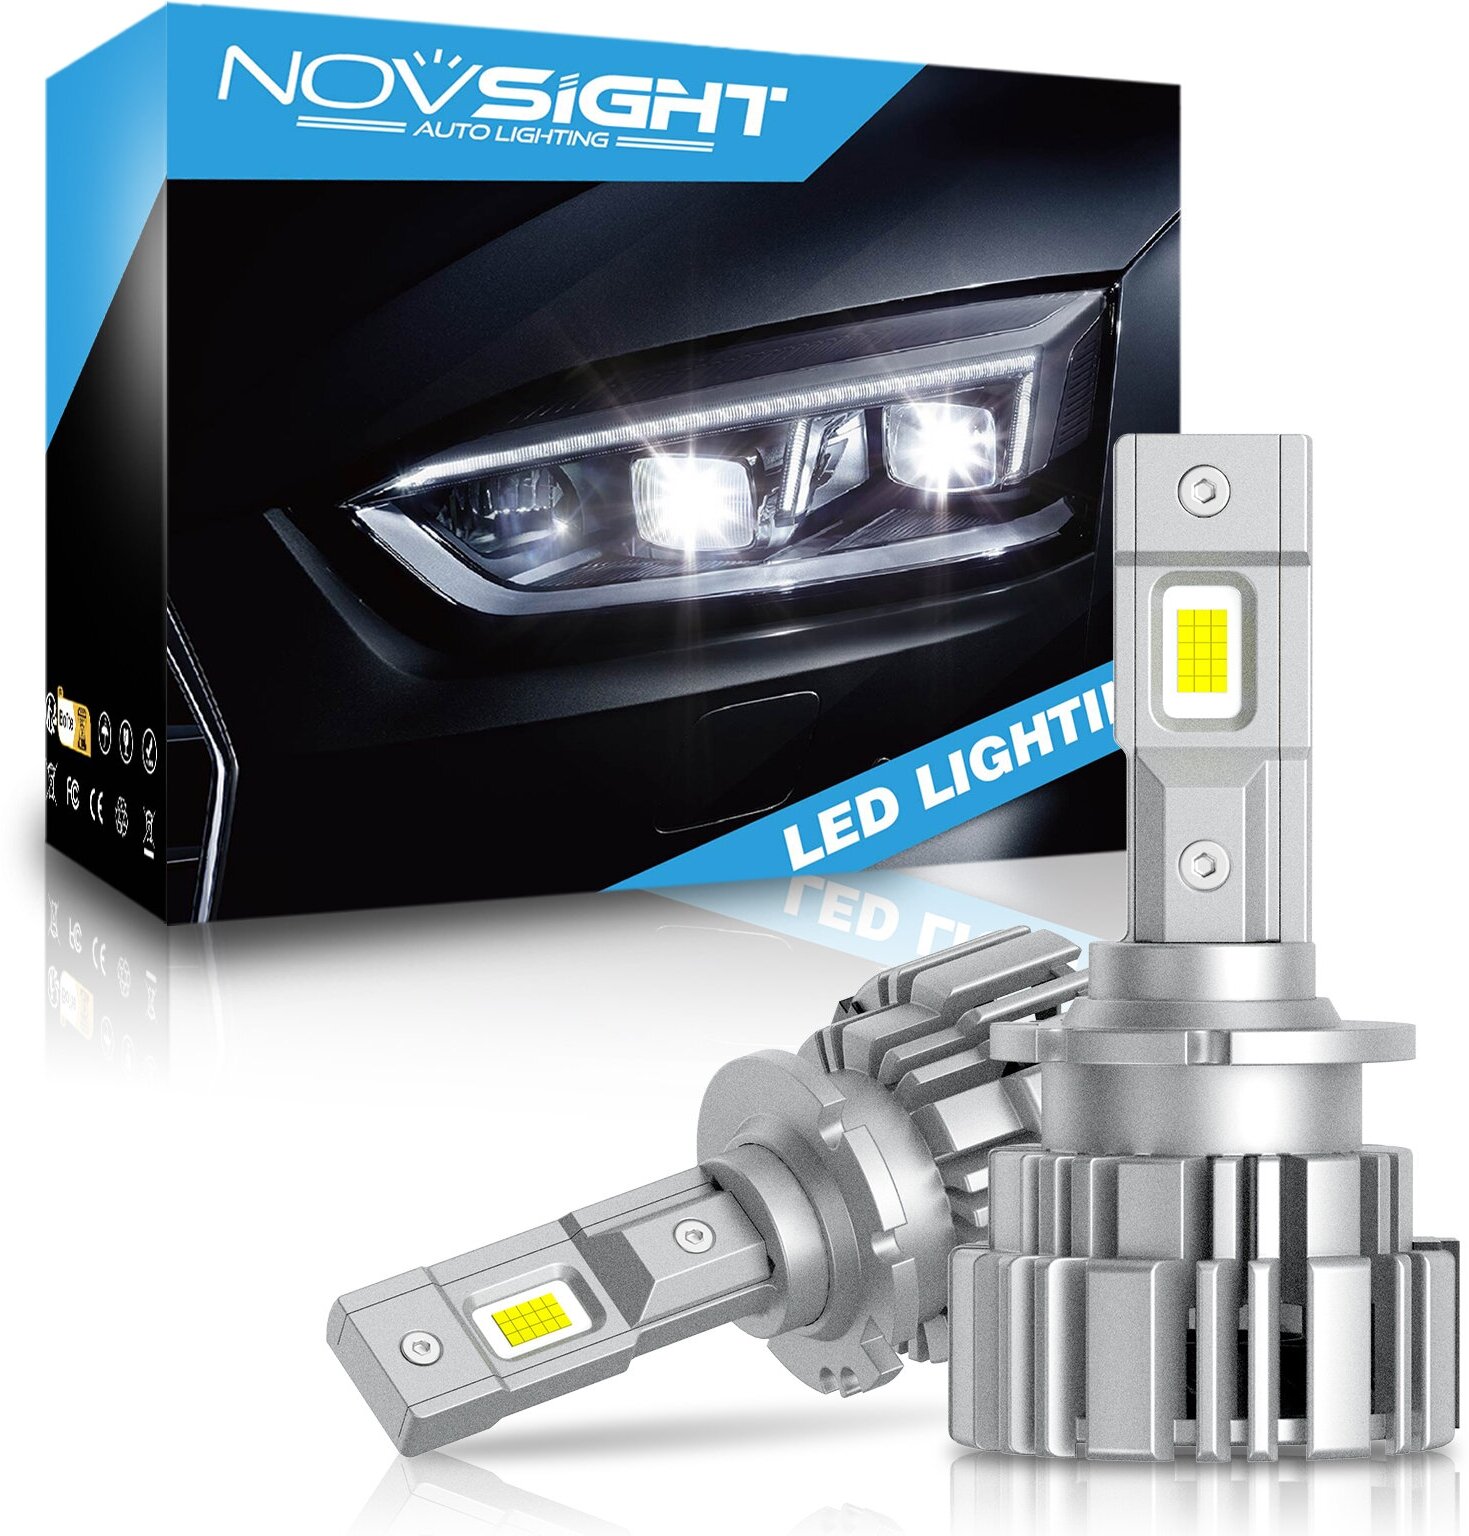 Светодиодная лампа Novsight DH D2 замена ксенона цоколь P32d-2 P32d-3 70Вт 2шт 20000Лм 6500К белый свет LED автомобильная